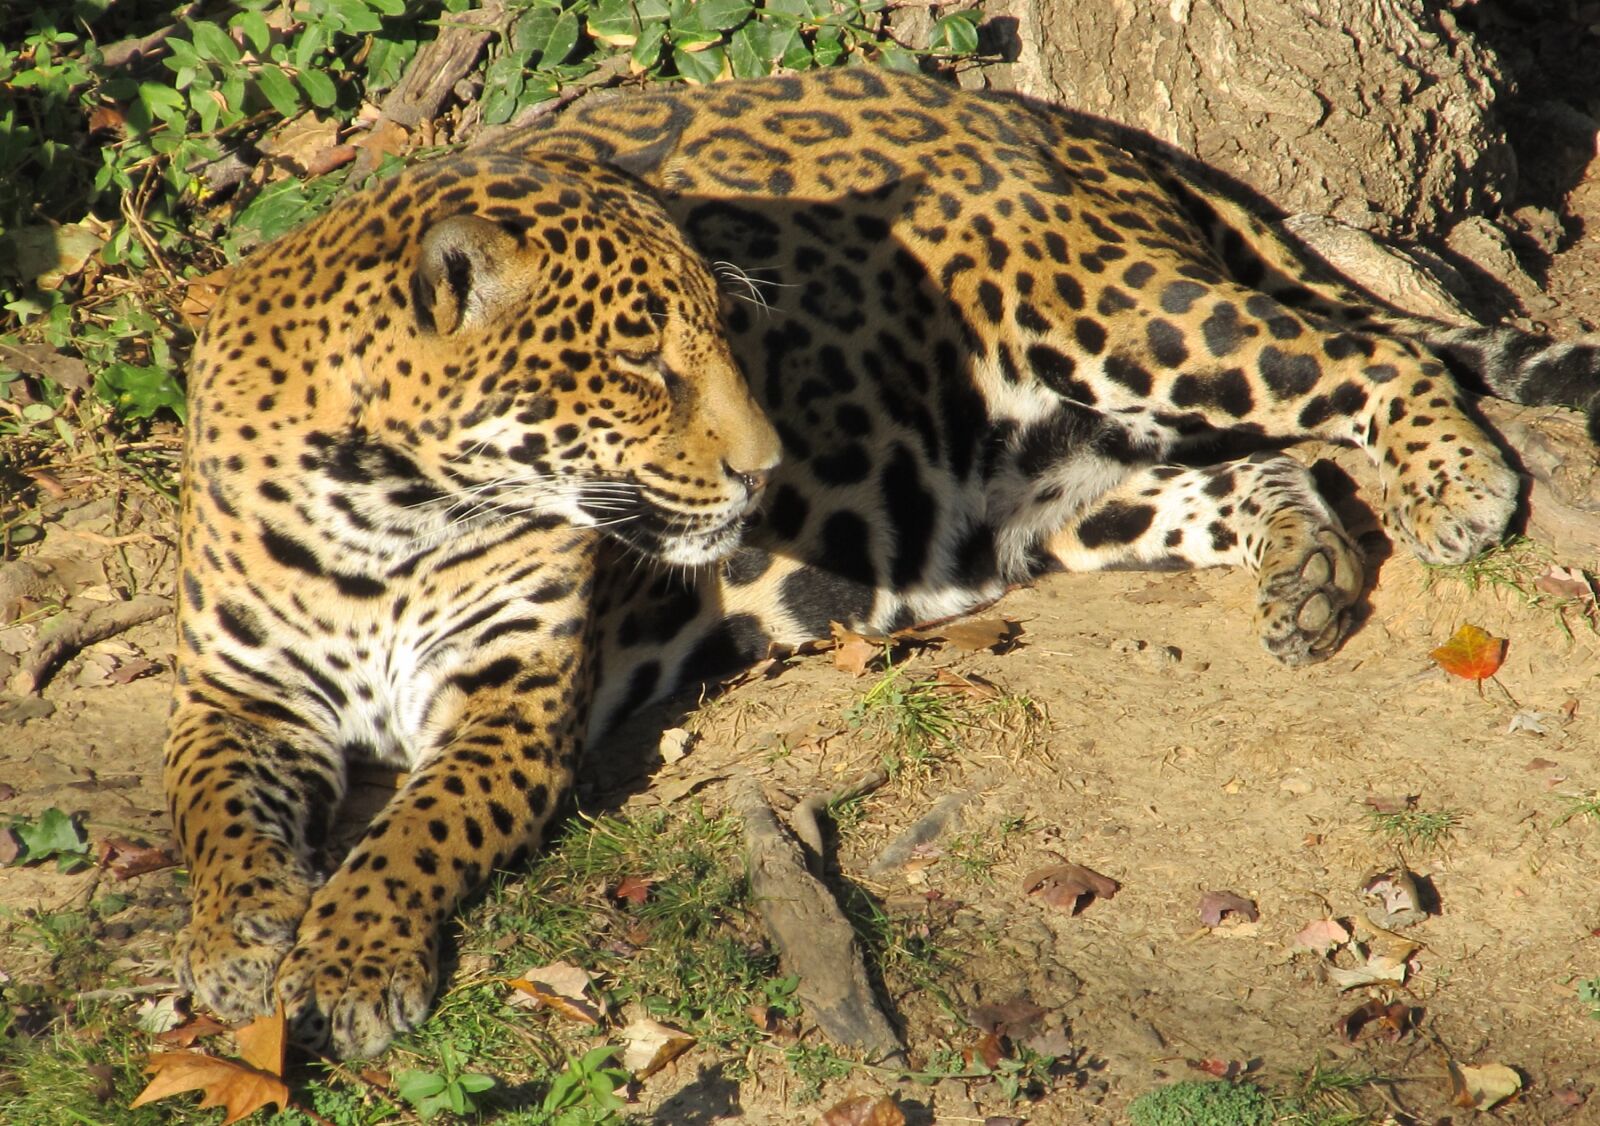 Canon PowerShot SX130 IS sample photo. Jaguar, cat, leopard photography